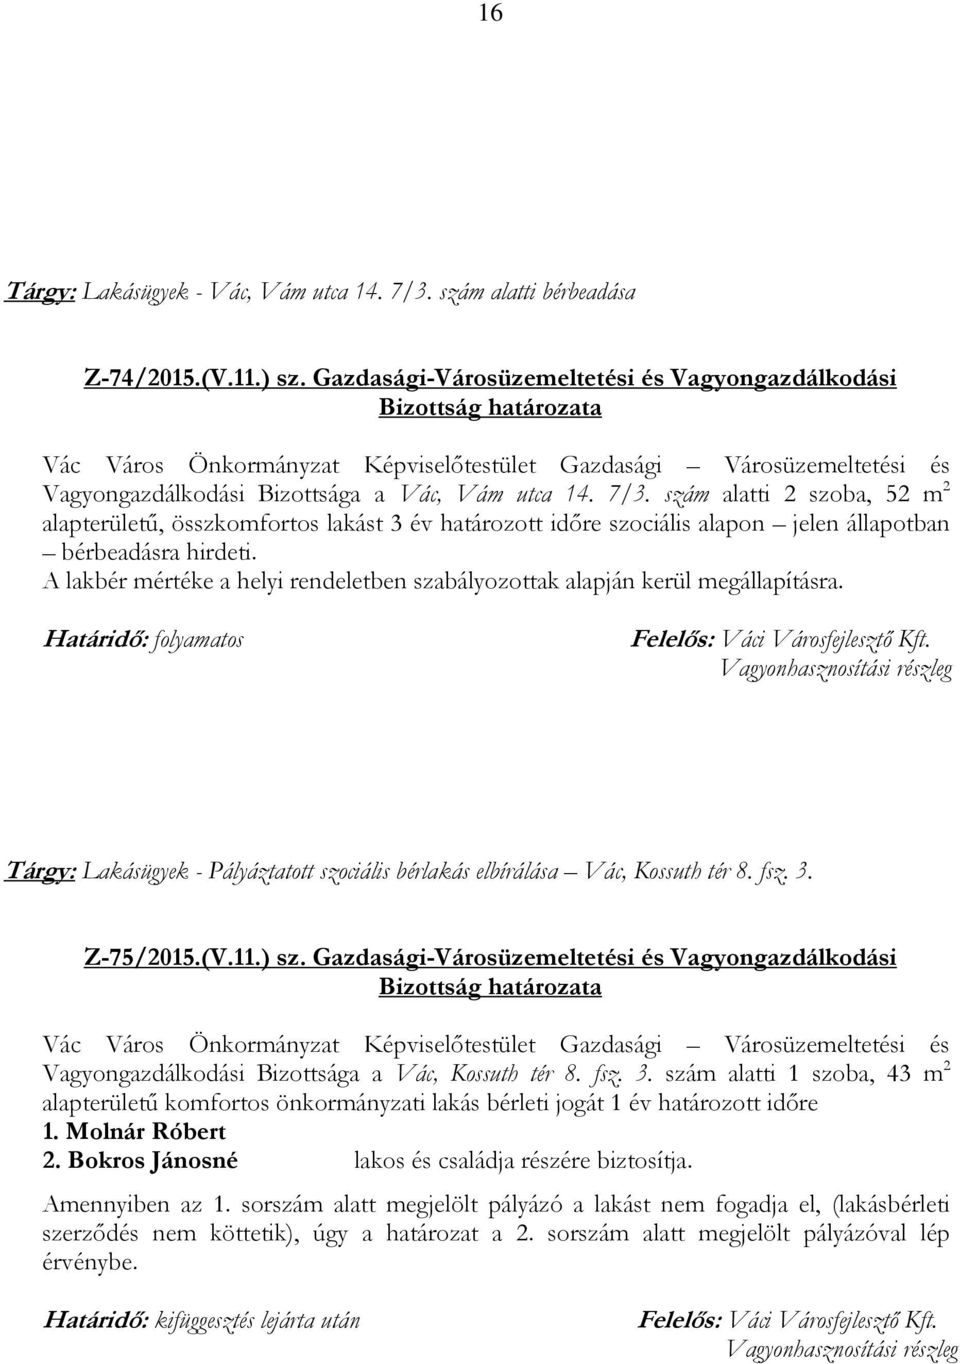 Z-75/2015.(V.11.) sz. Gazdasági-Városüzemeltetési és Vagyongazdálkodási Vagyongazdálkodási Bizottsága a Vác, Kossuth tér 8. fsz. 3.